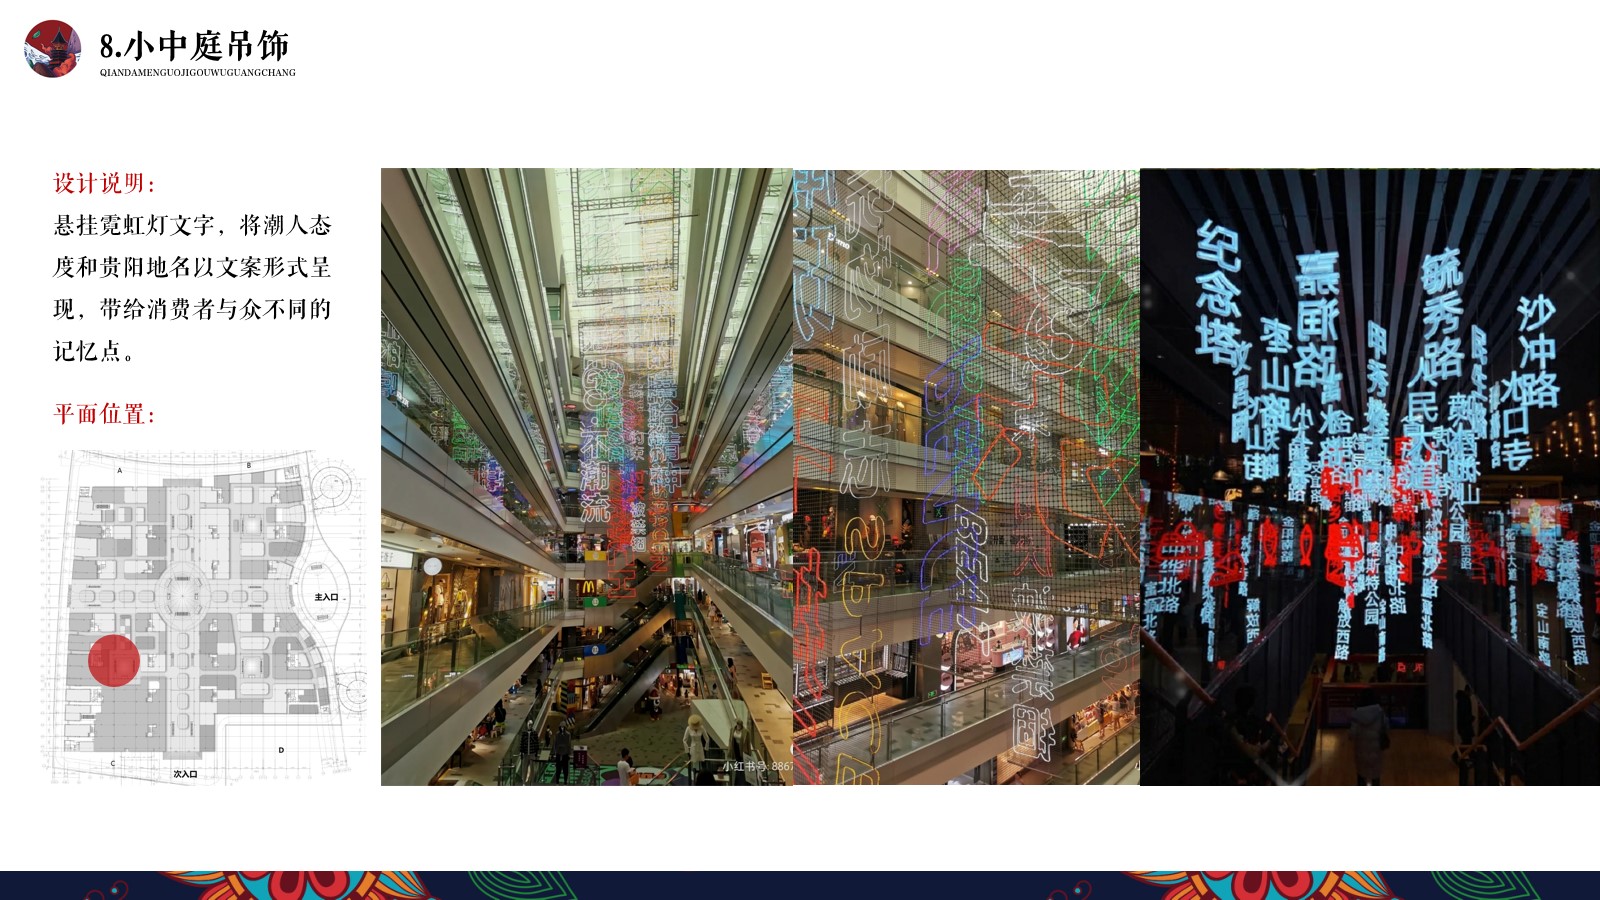 黔大门国际购物广场商业美陈设计概念方案